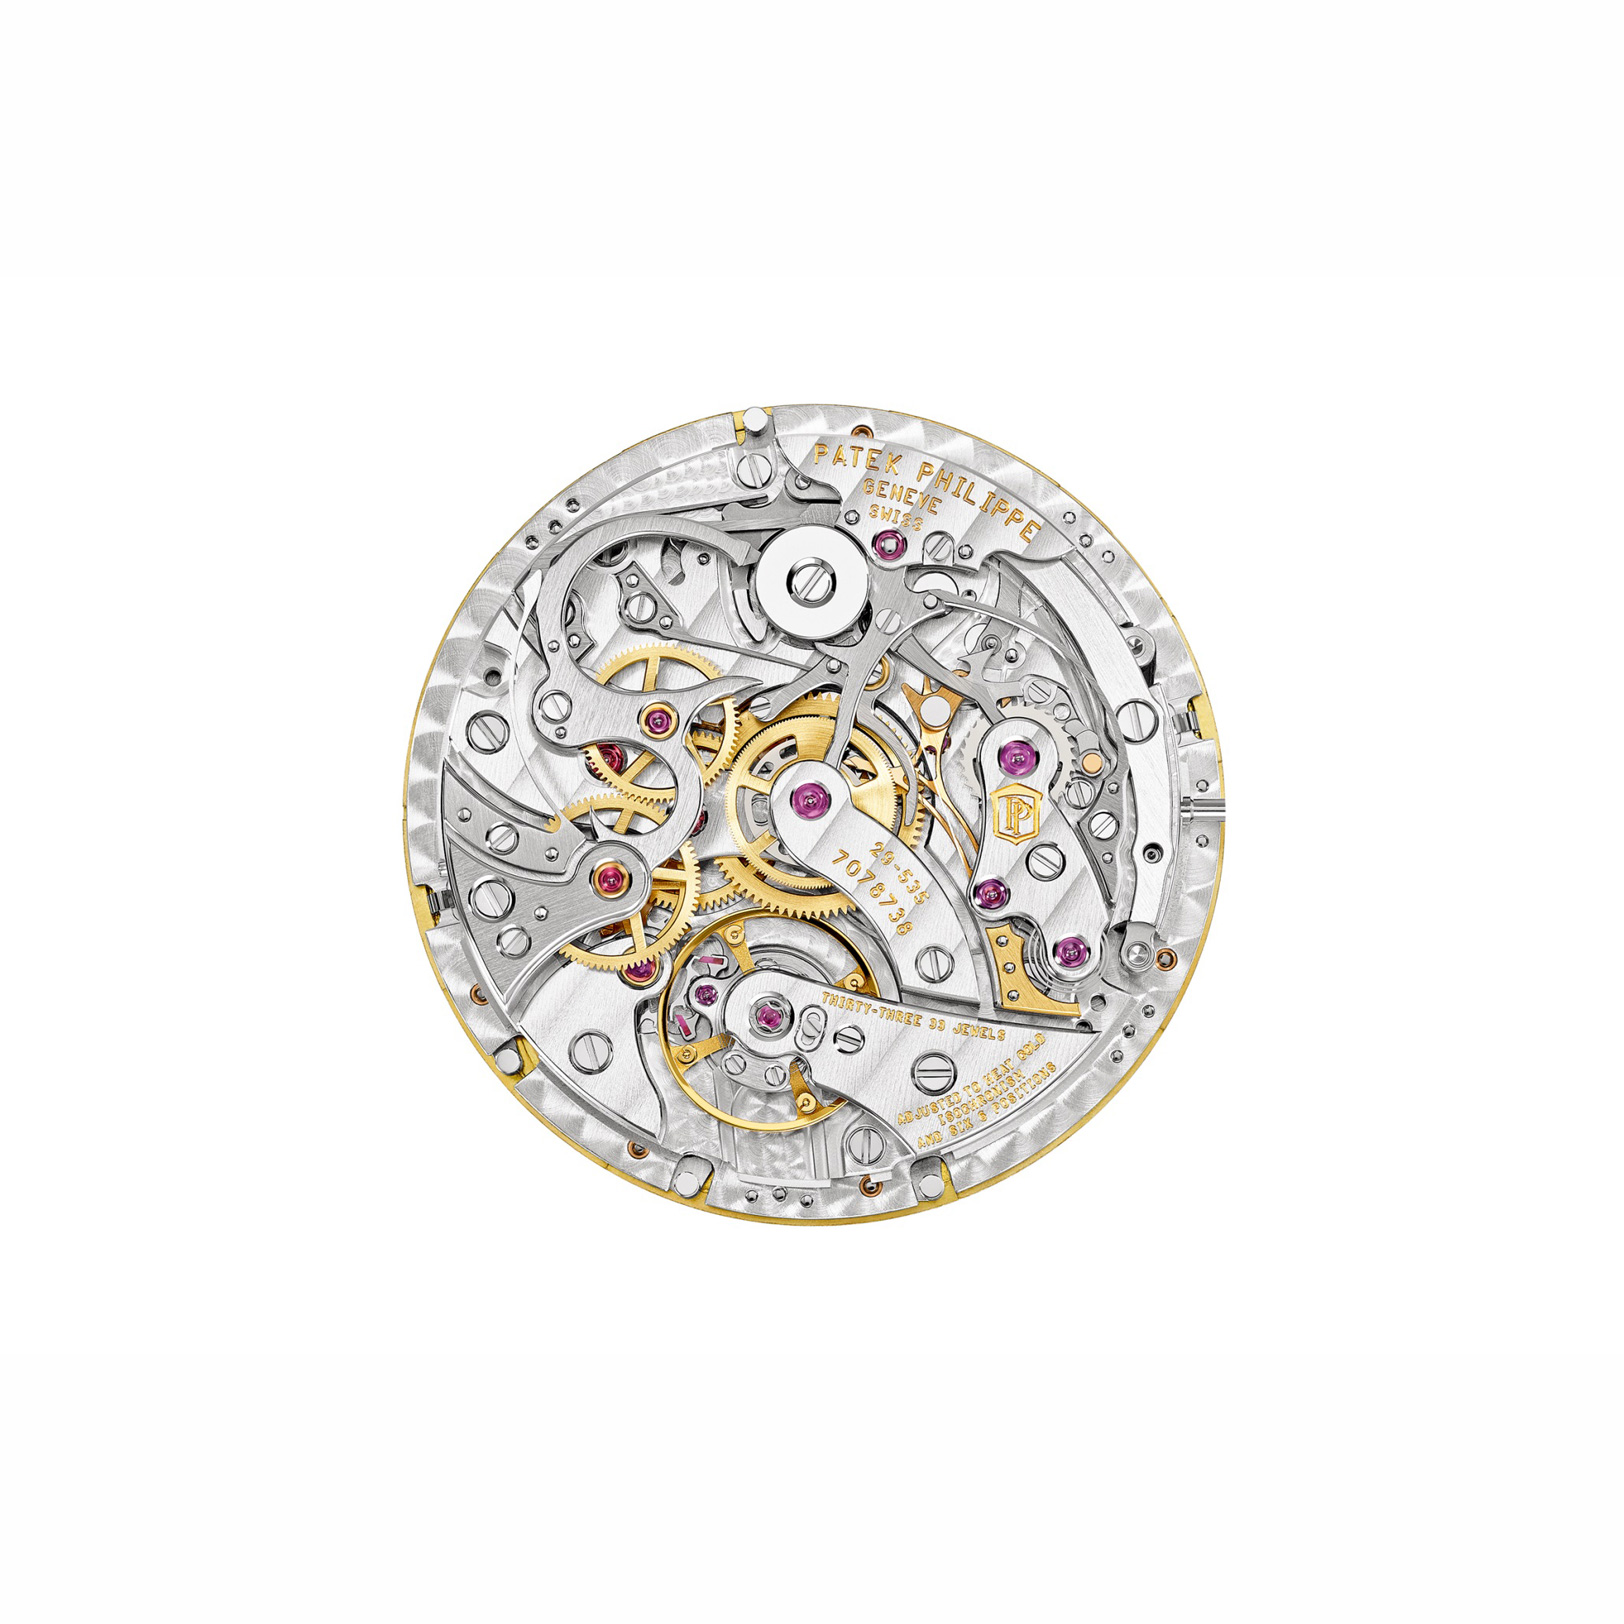 นาฬิกาปาเต็ก ฟิลิปป์ GRAND COMPLICATIONS PERPETUAL CALENDAR CHRONOGRAPH YELLOW GOLD gallery 5